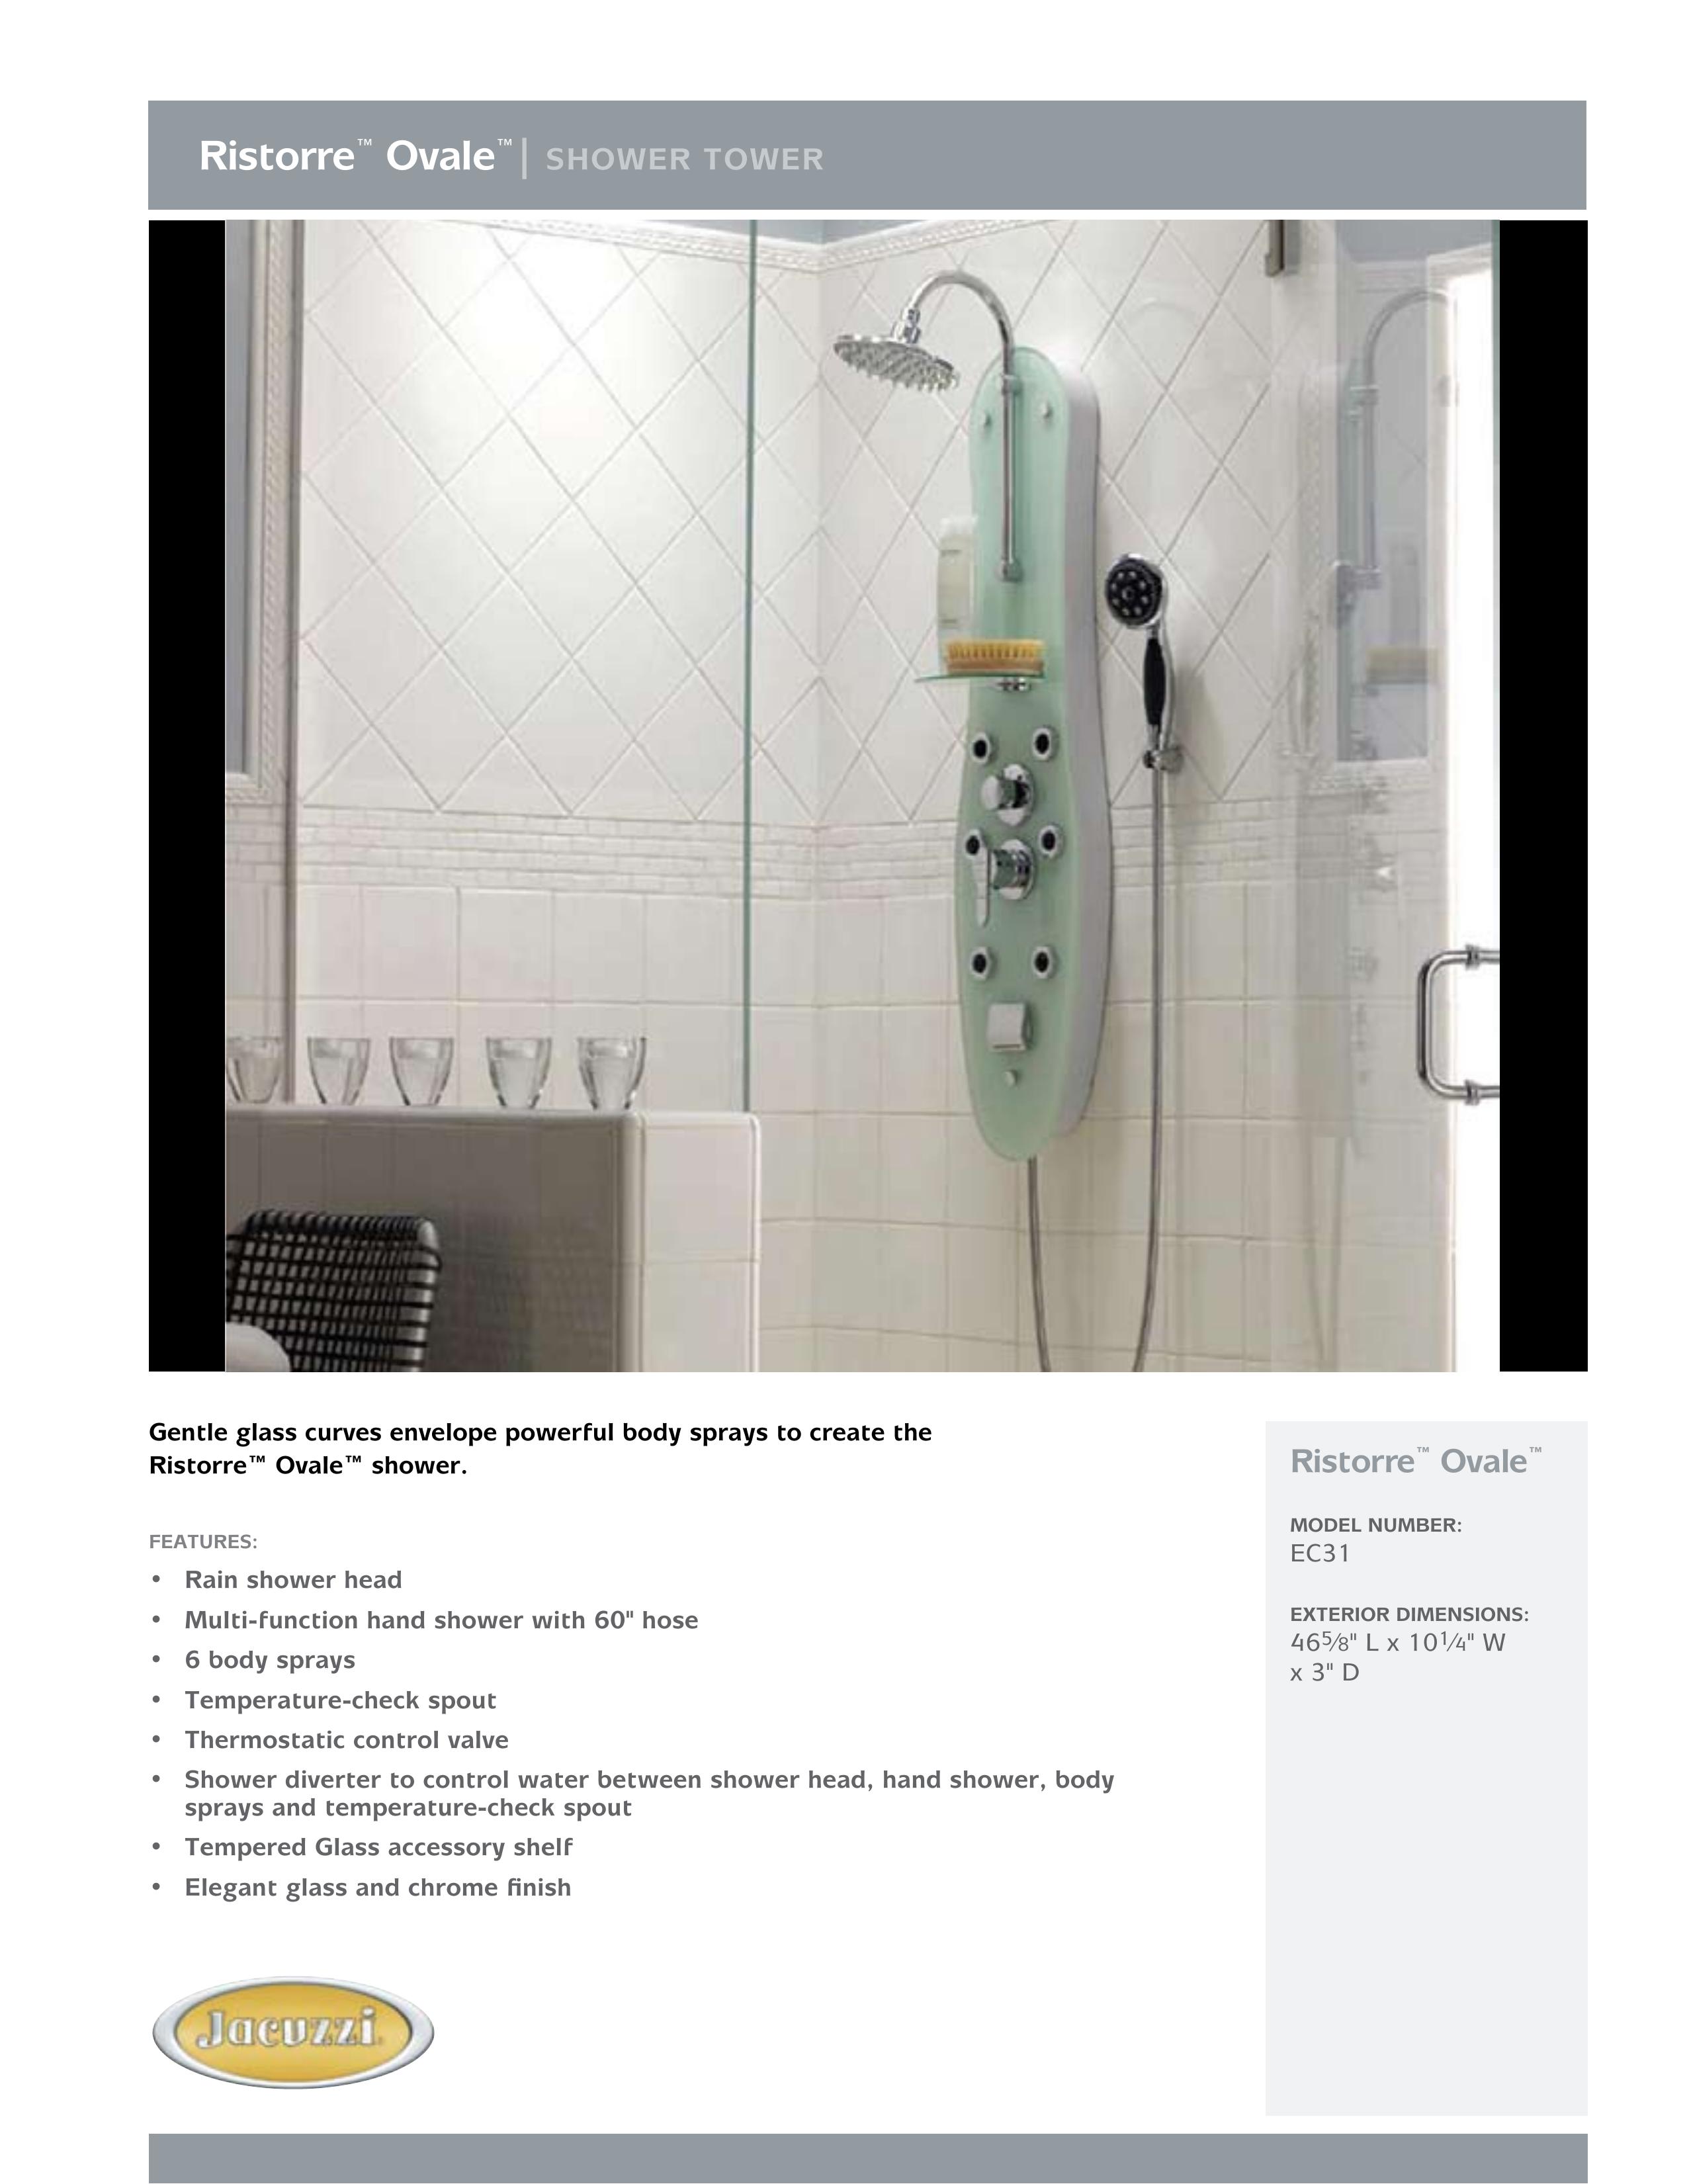 Jacuzzi EC31 Outdoor Shower User Manual